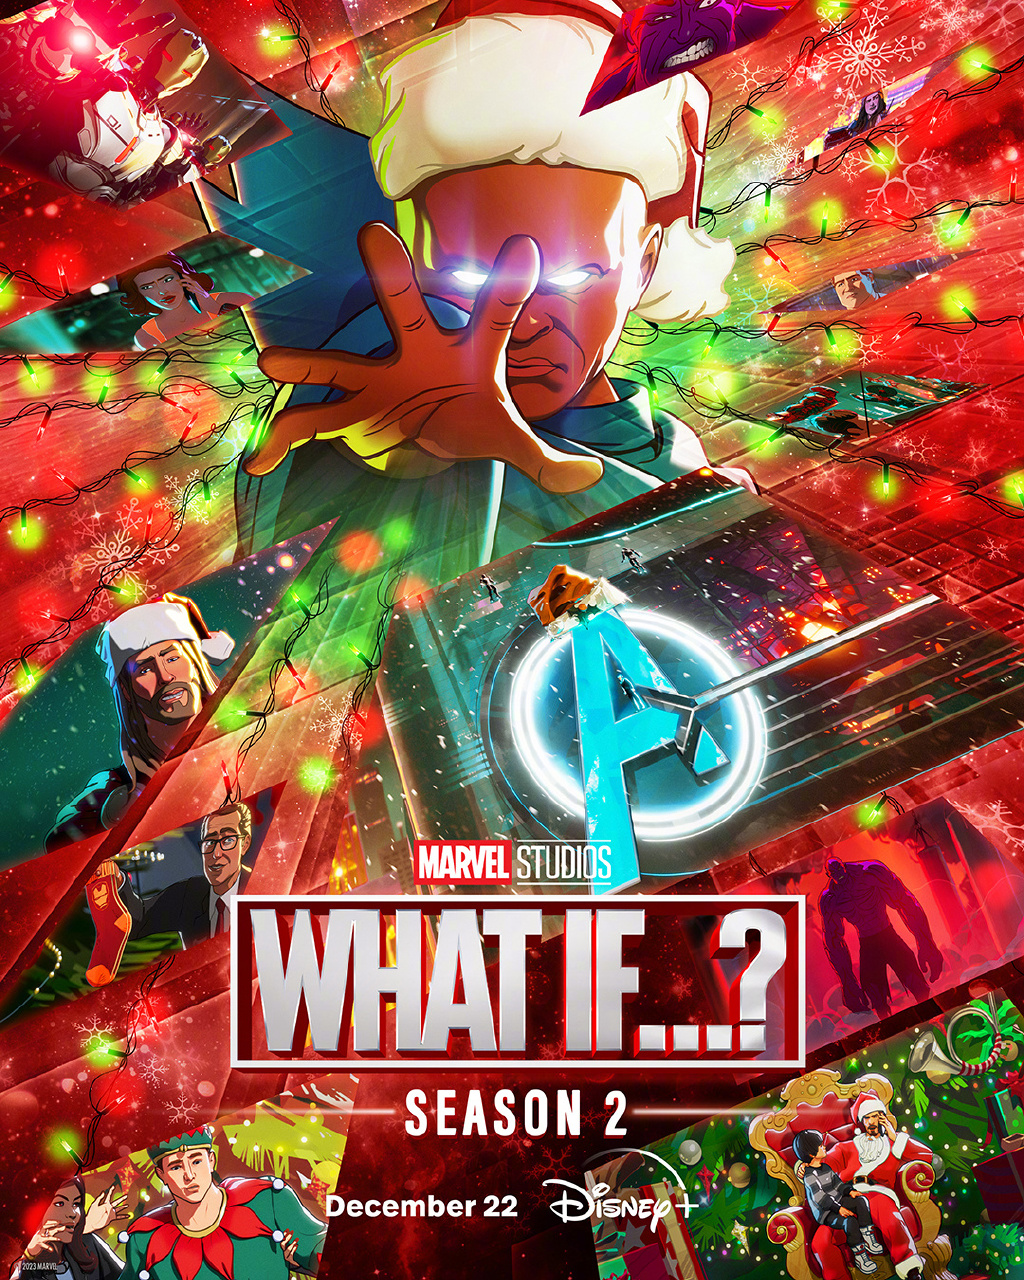 《假如》第二季发布海报 12月22日开播